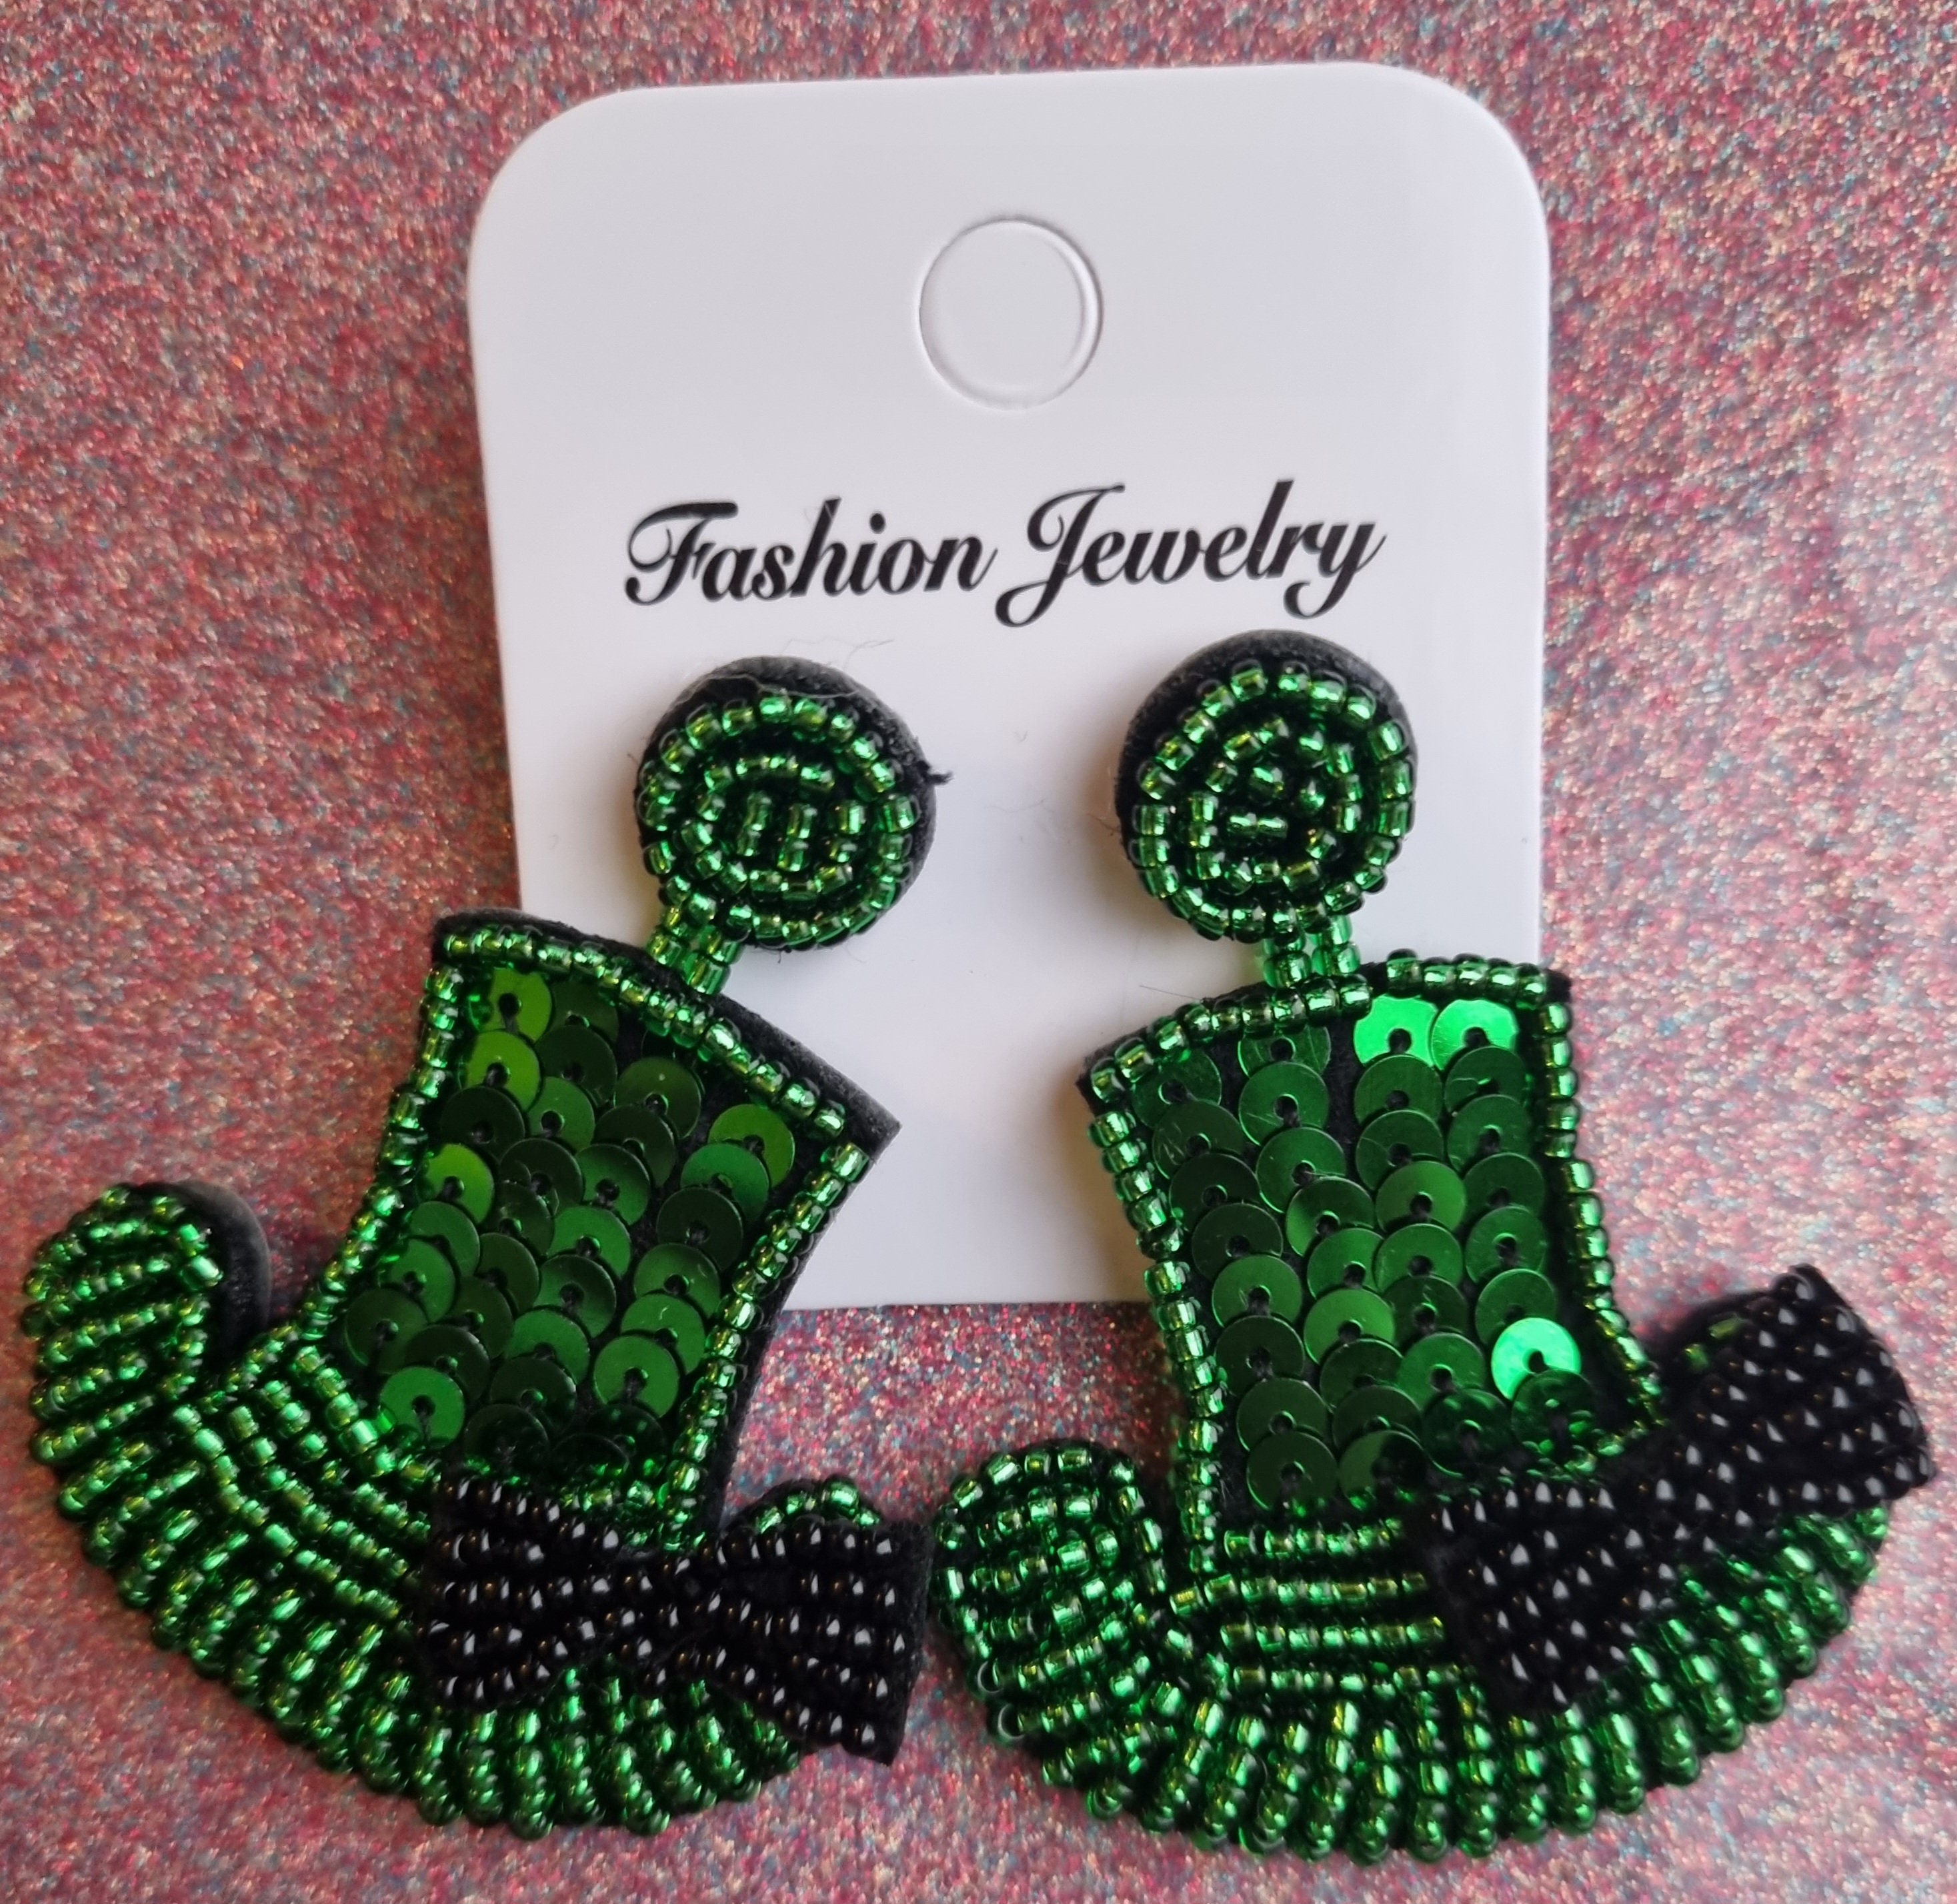 St. Patricks Day Earrings Jewelry Cute Earrings Cute Cartoon Pendant Earrings Green Leaf Earrings St. Patricks Day Green Accessories Jewelry, Adult